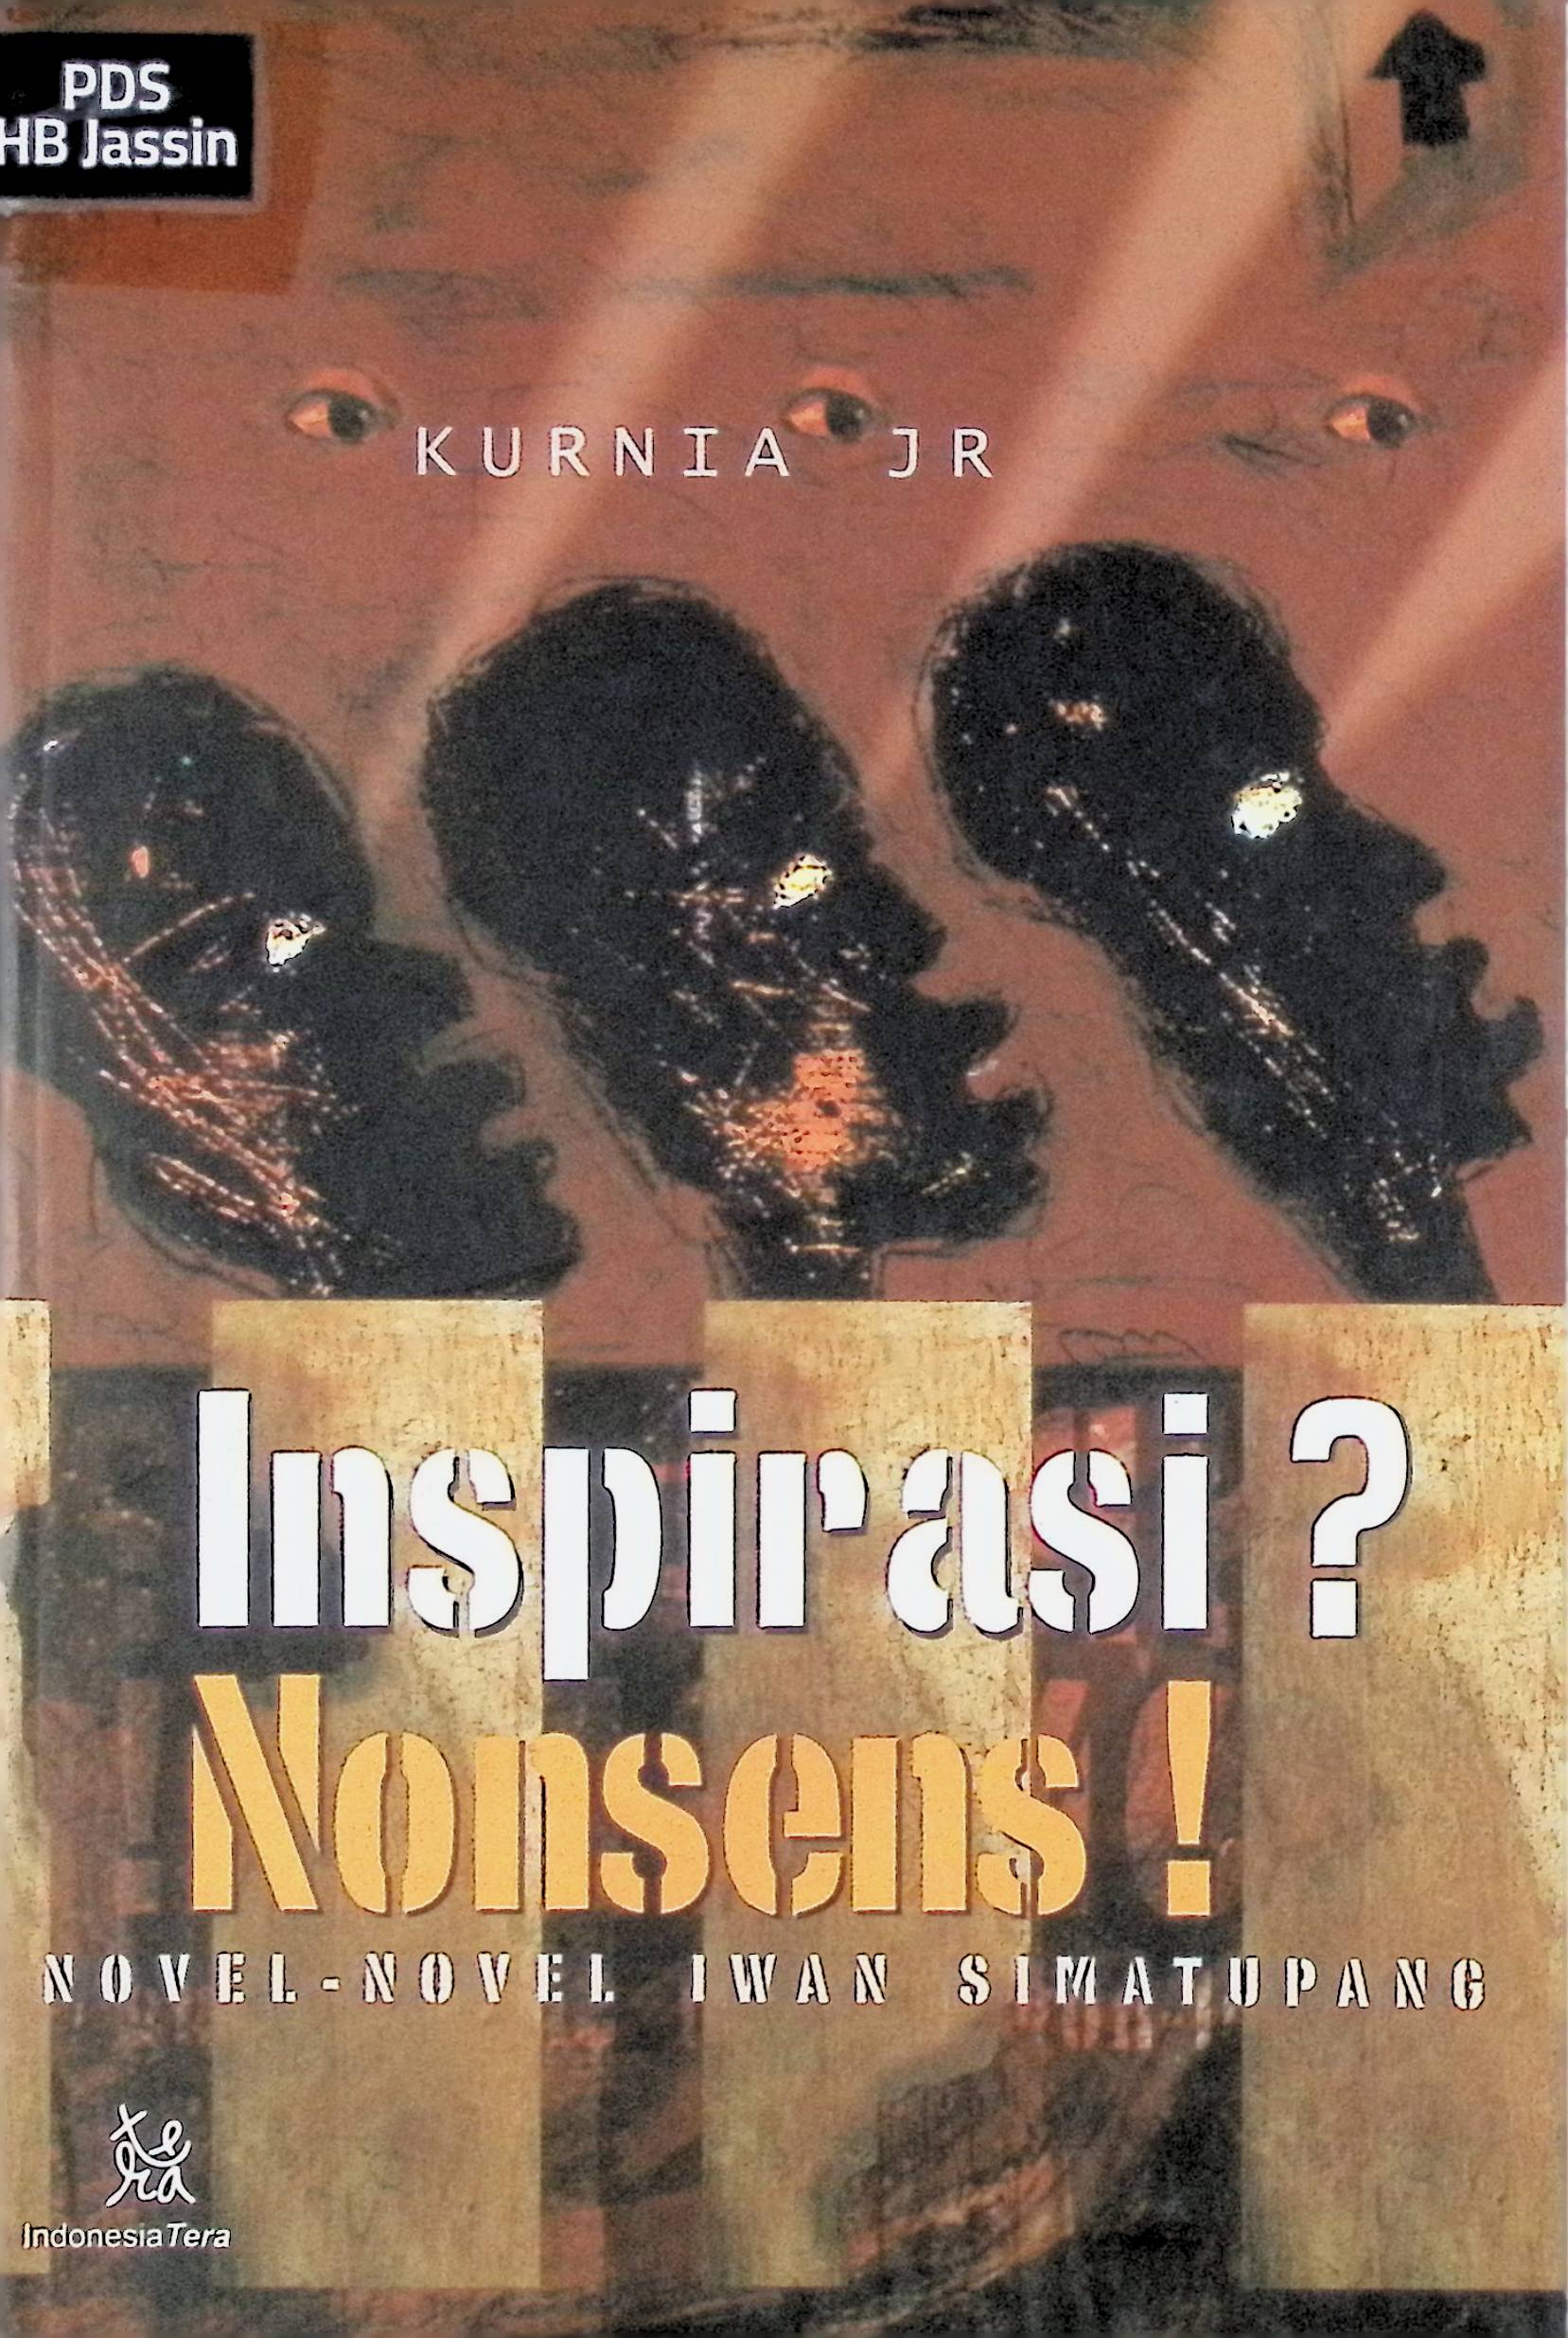 Inspirasi? Nonses!: Novel-Novel Iwan Simatupang